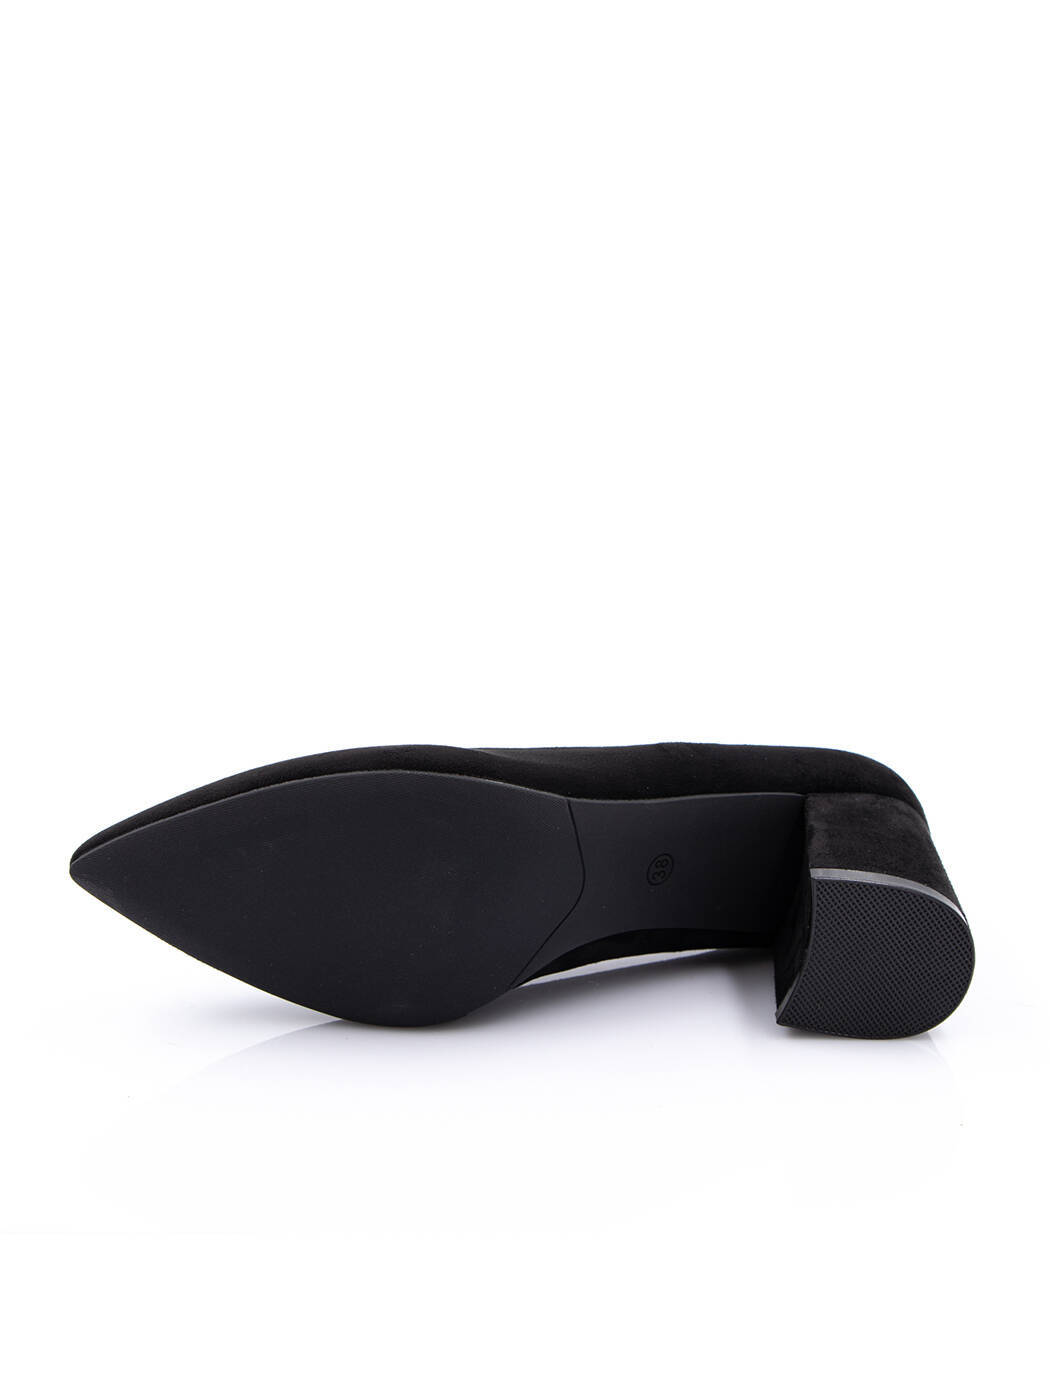 Туфли женские черные экозамша каблук устойчивый демисезон от производителя AM вид 2